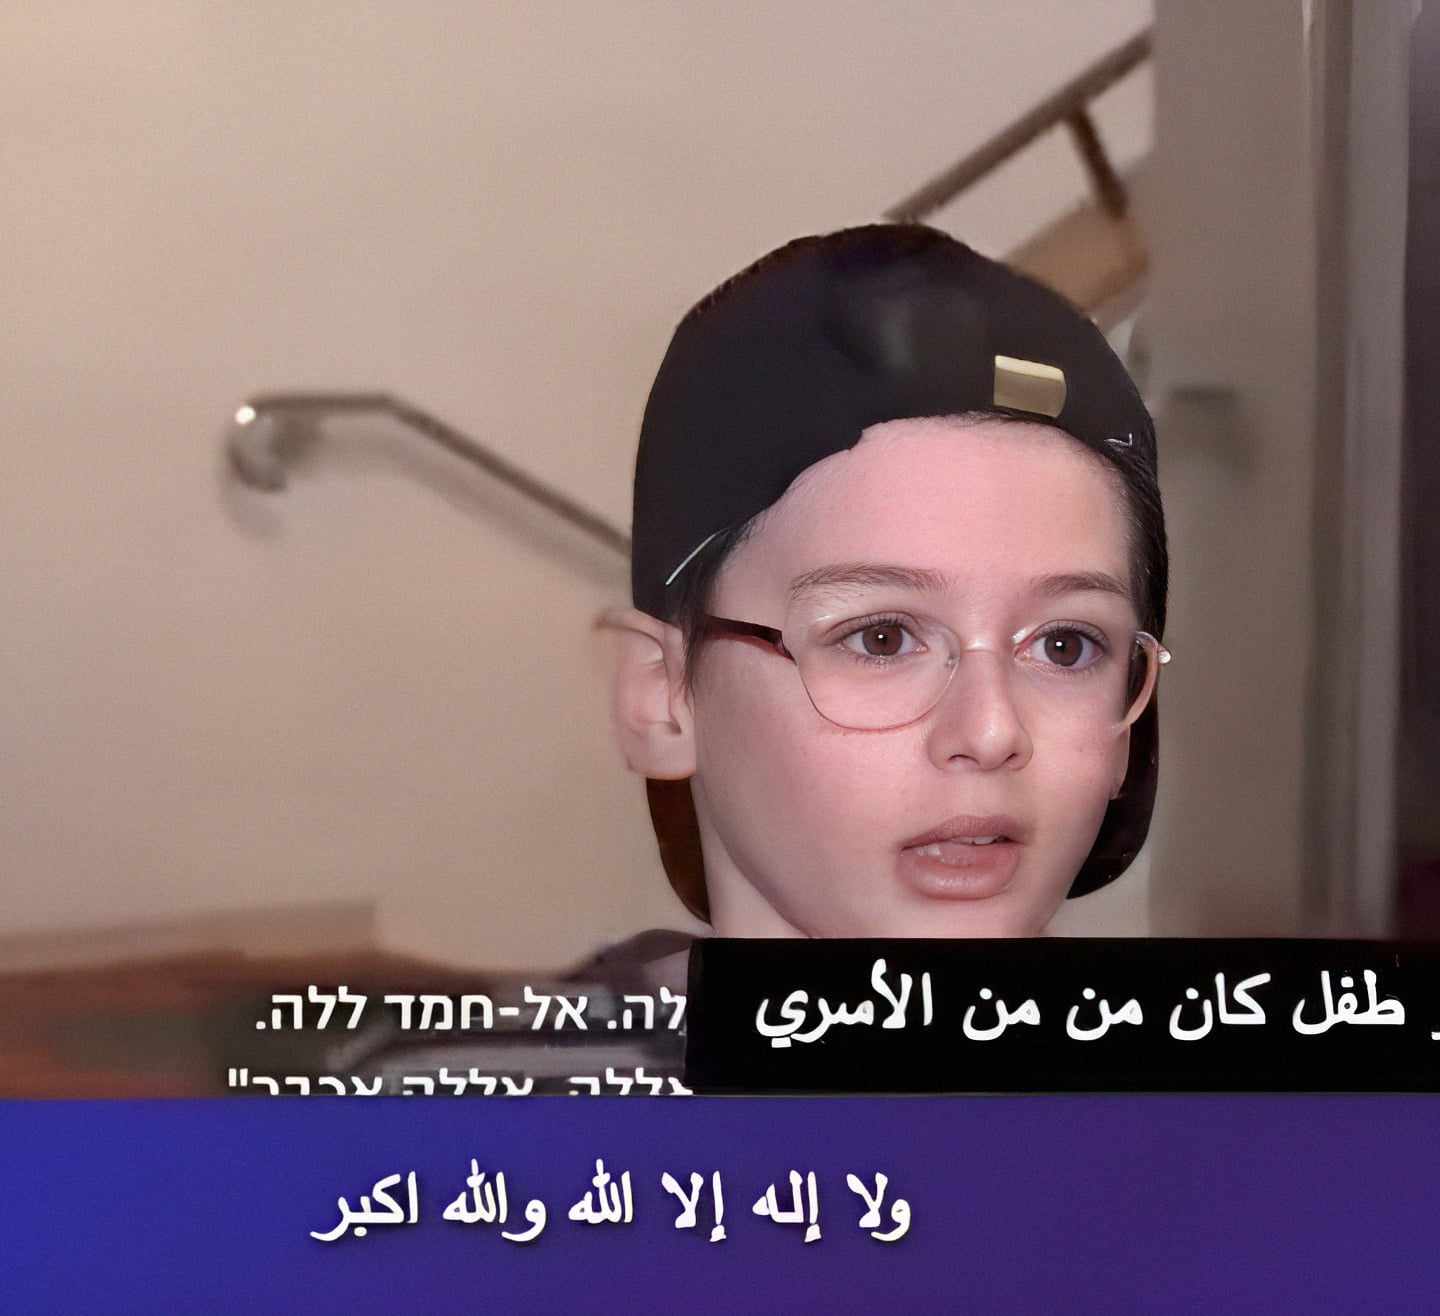 طفل إسرائيلي يتعلم التسبيح من كتائب القسام